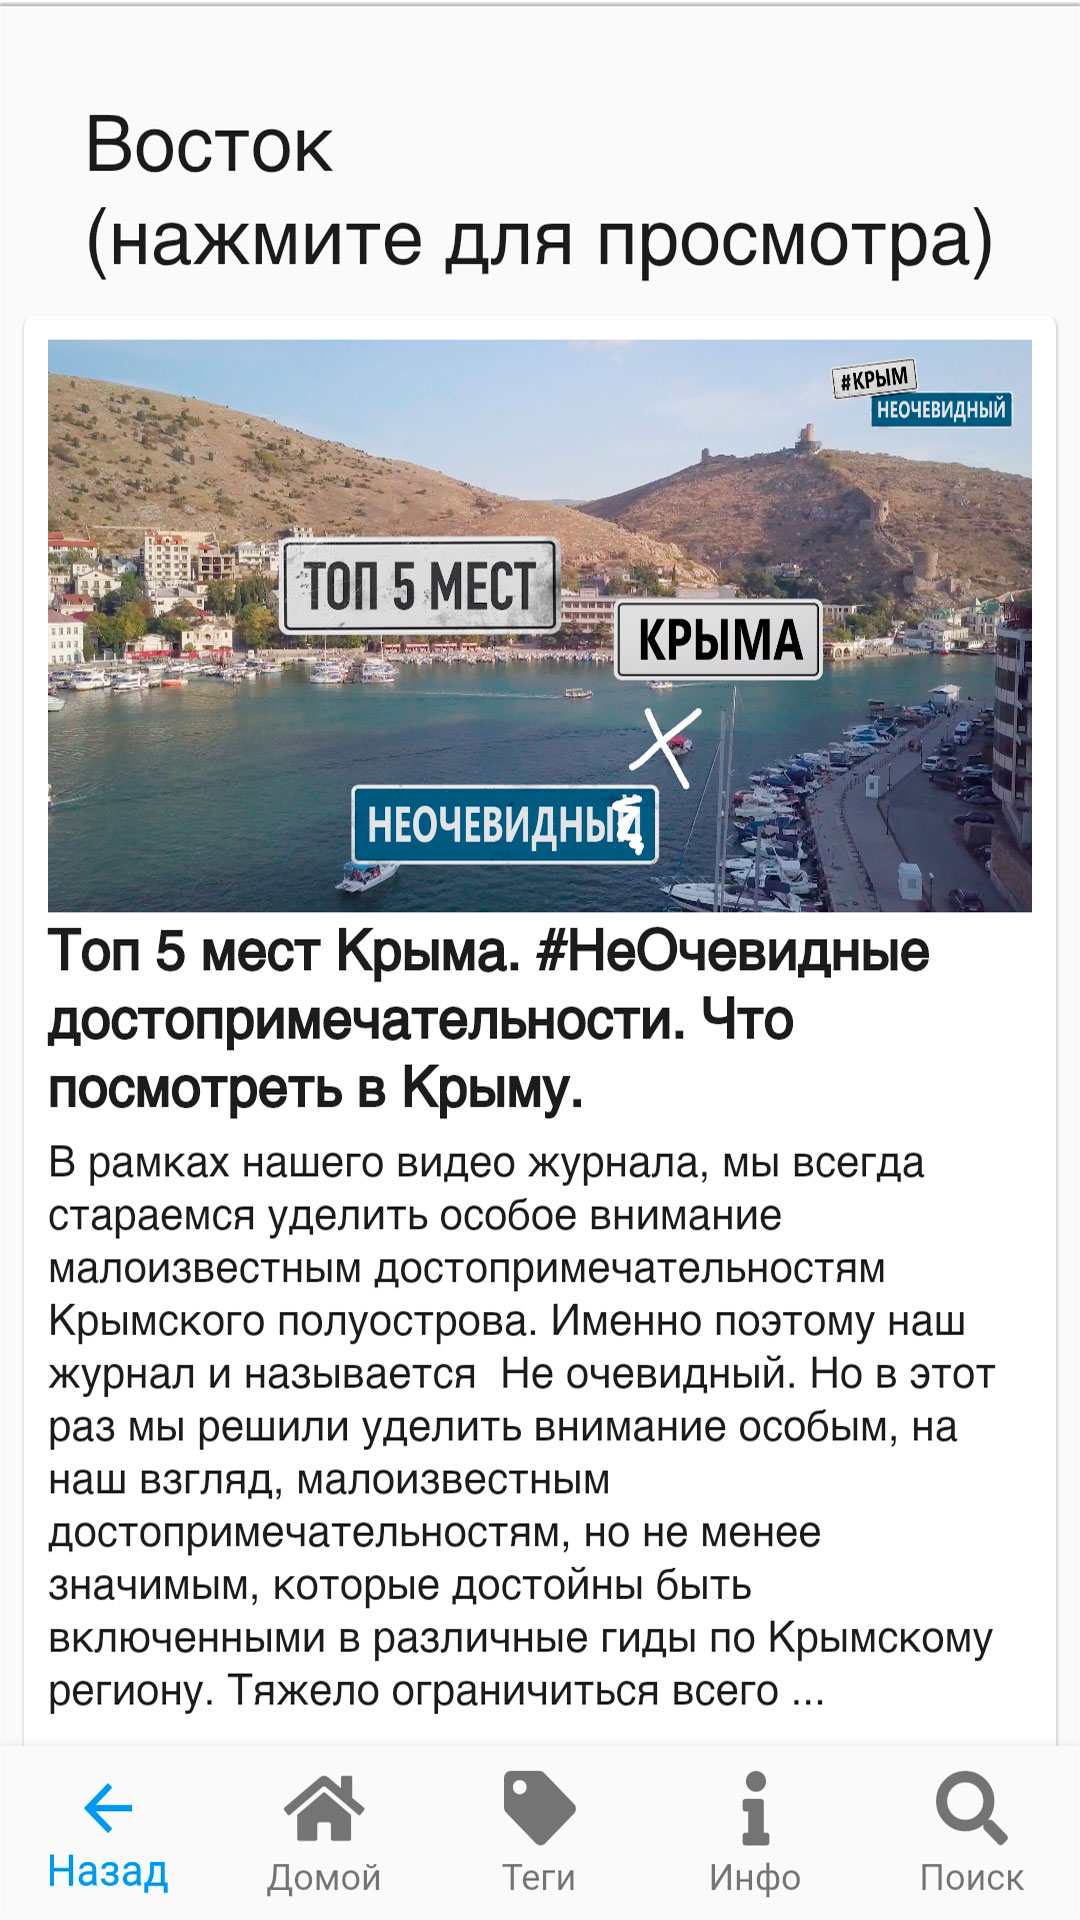 Изображение: Крым НеОчевидный Видео журнал